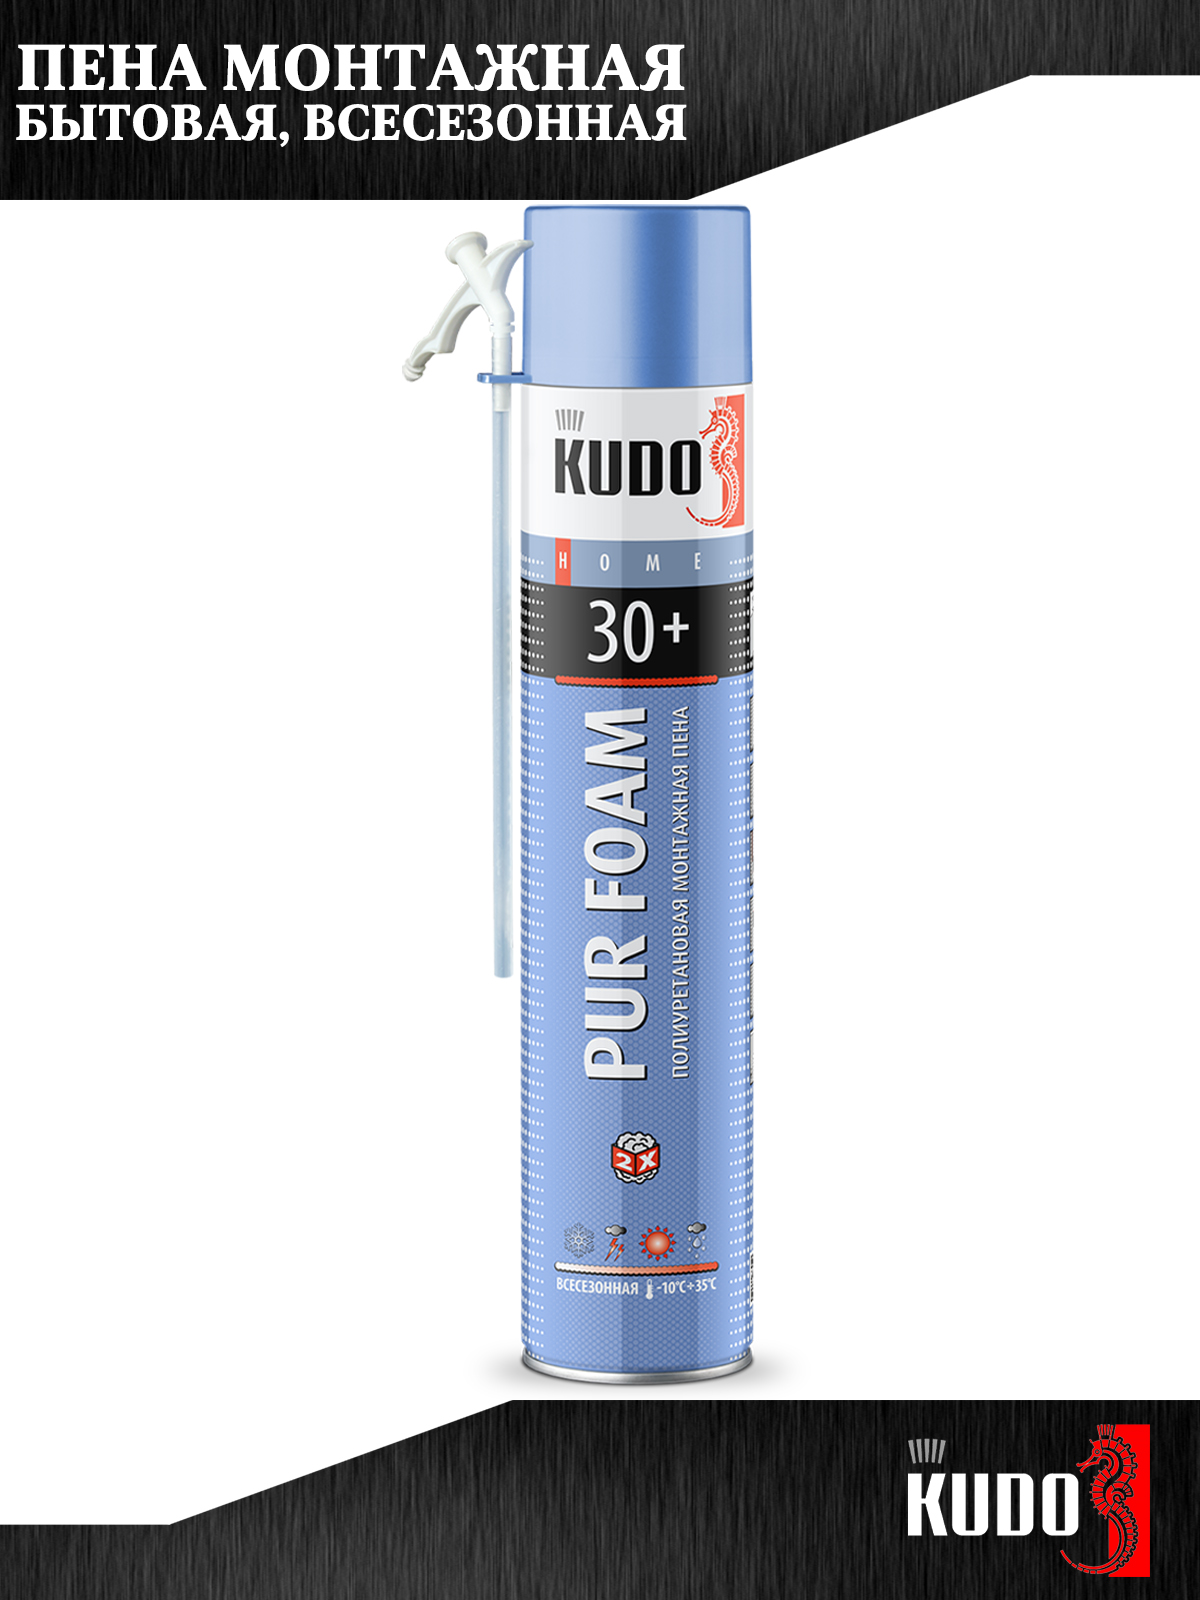 Монтажная пена KUDO PUR FOAM 30+, полиуретановая, всесезонная, до 30 л., 1000 мл, 2 шт.